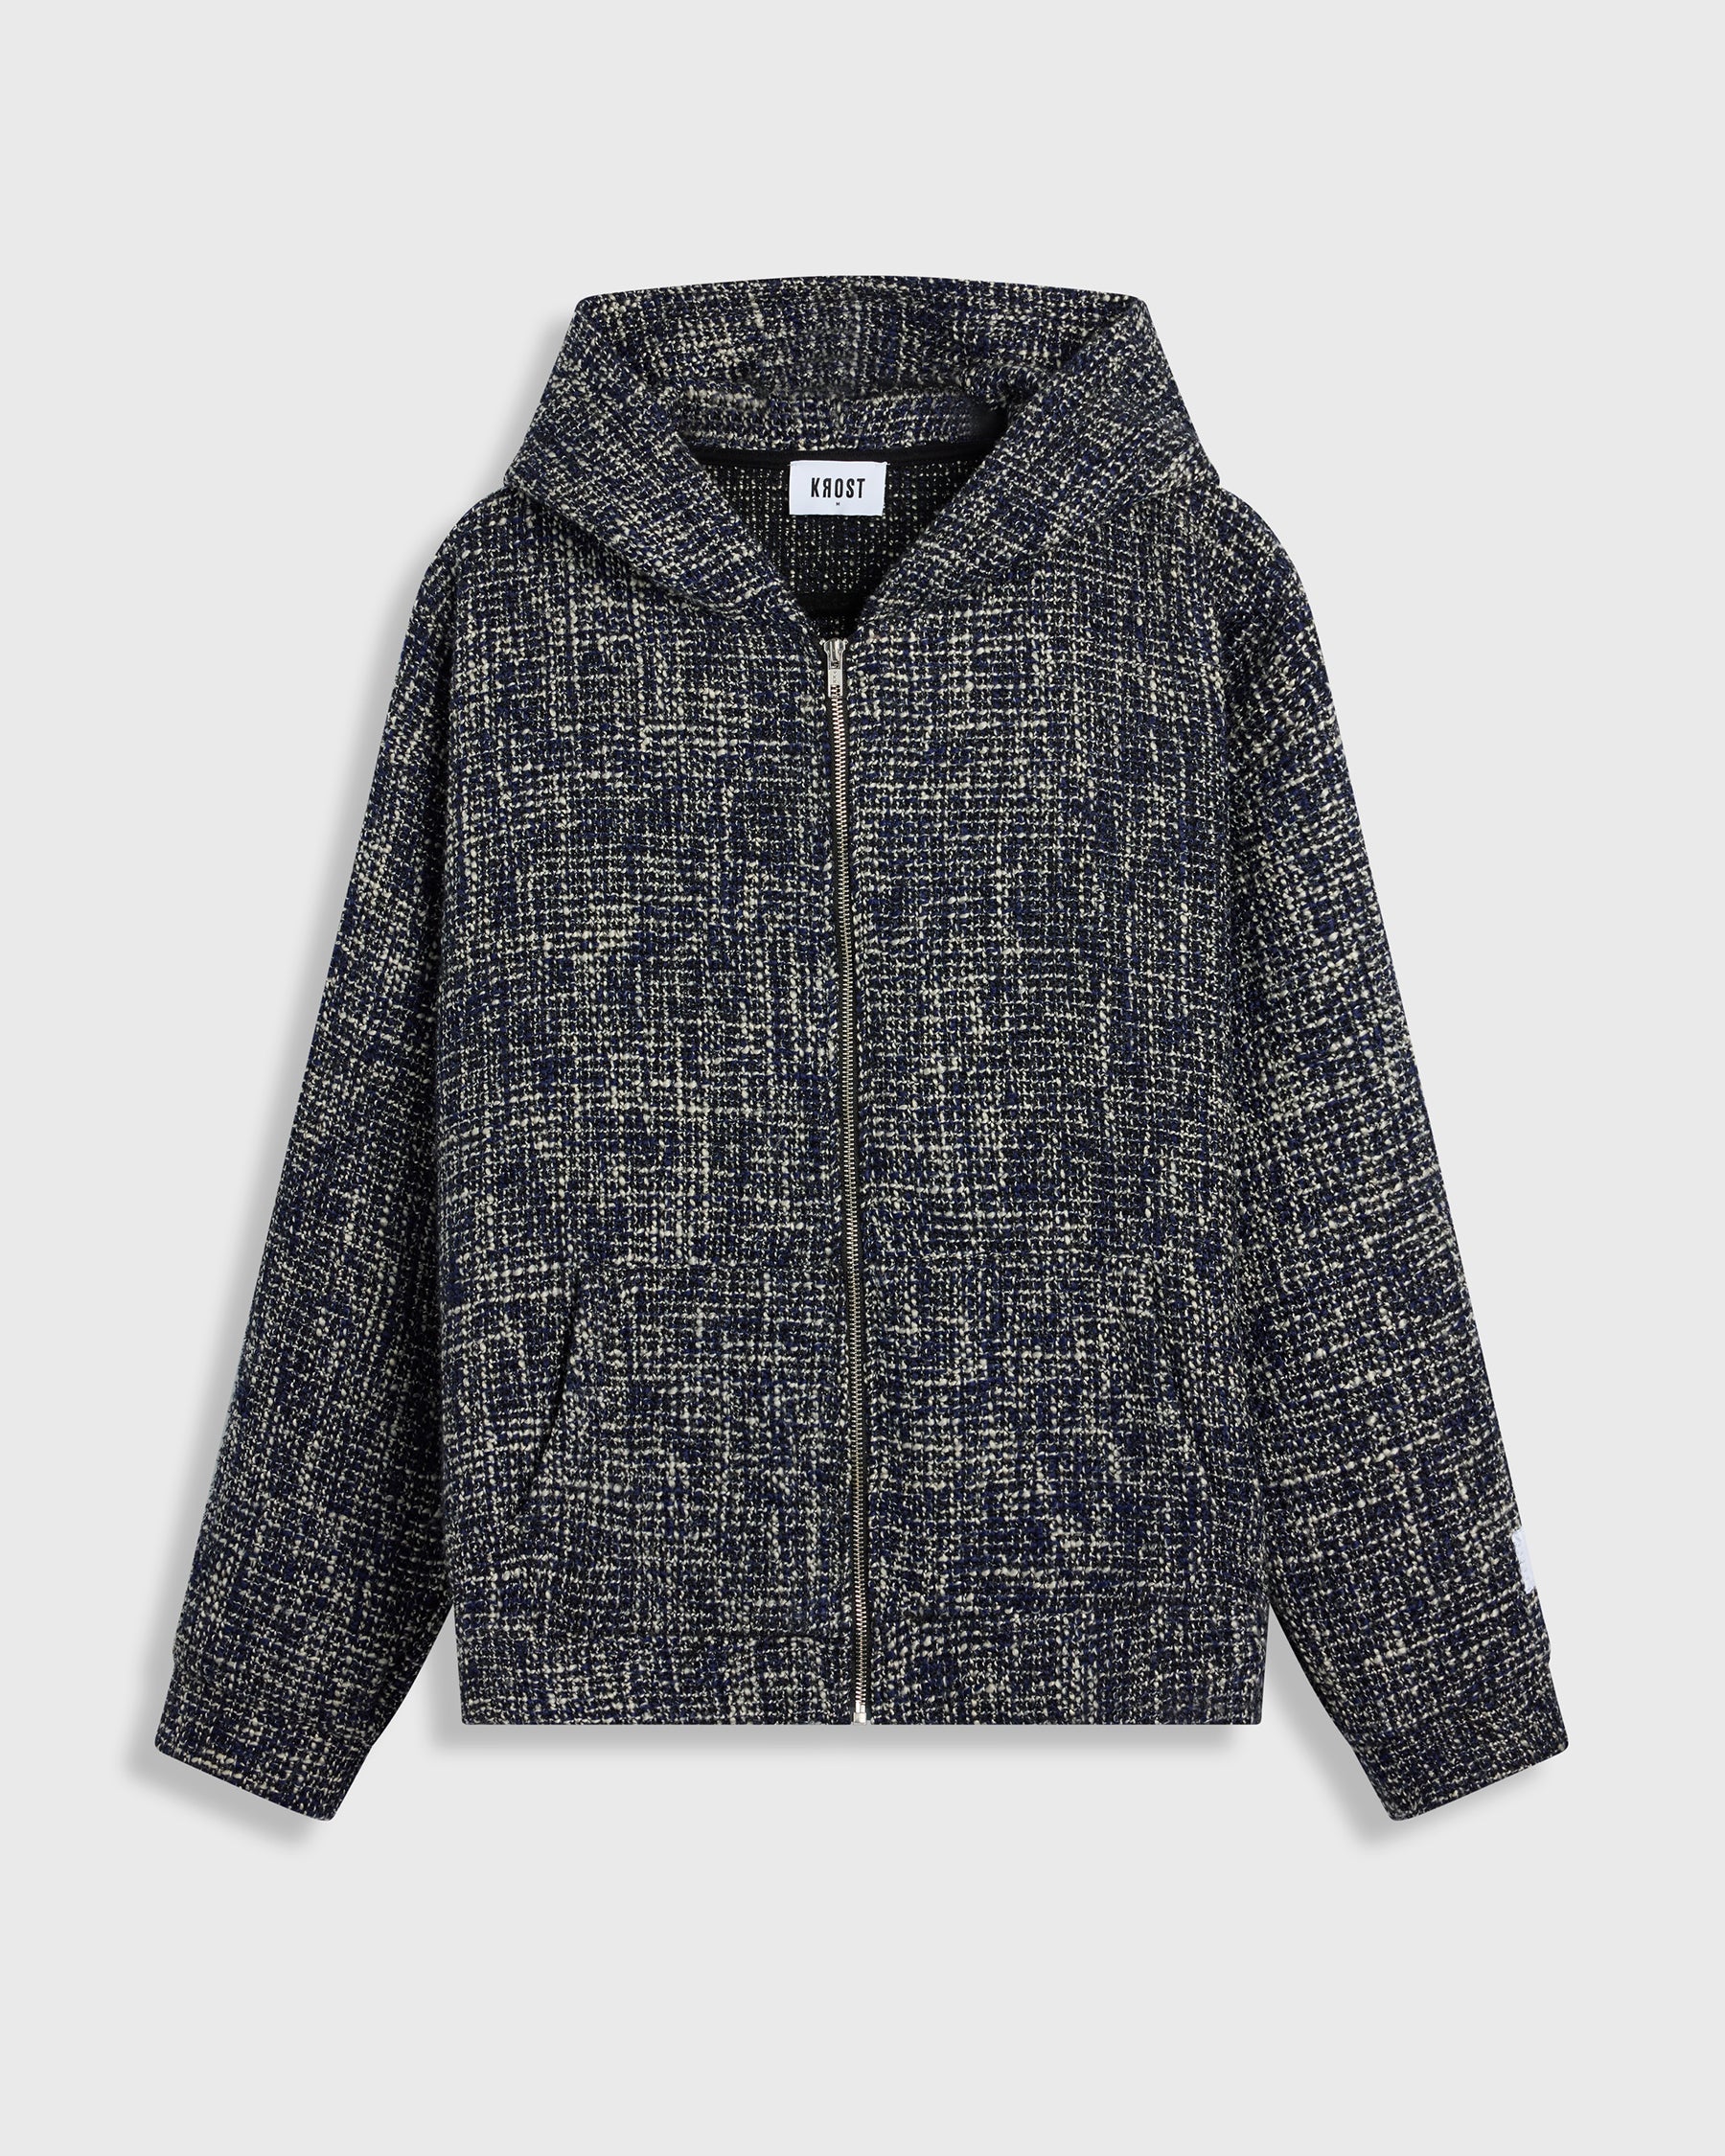 Navy tweed full zip up hoodie jacket – KROST